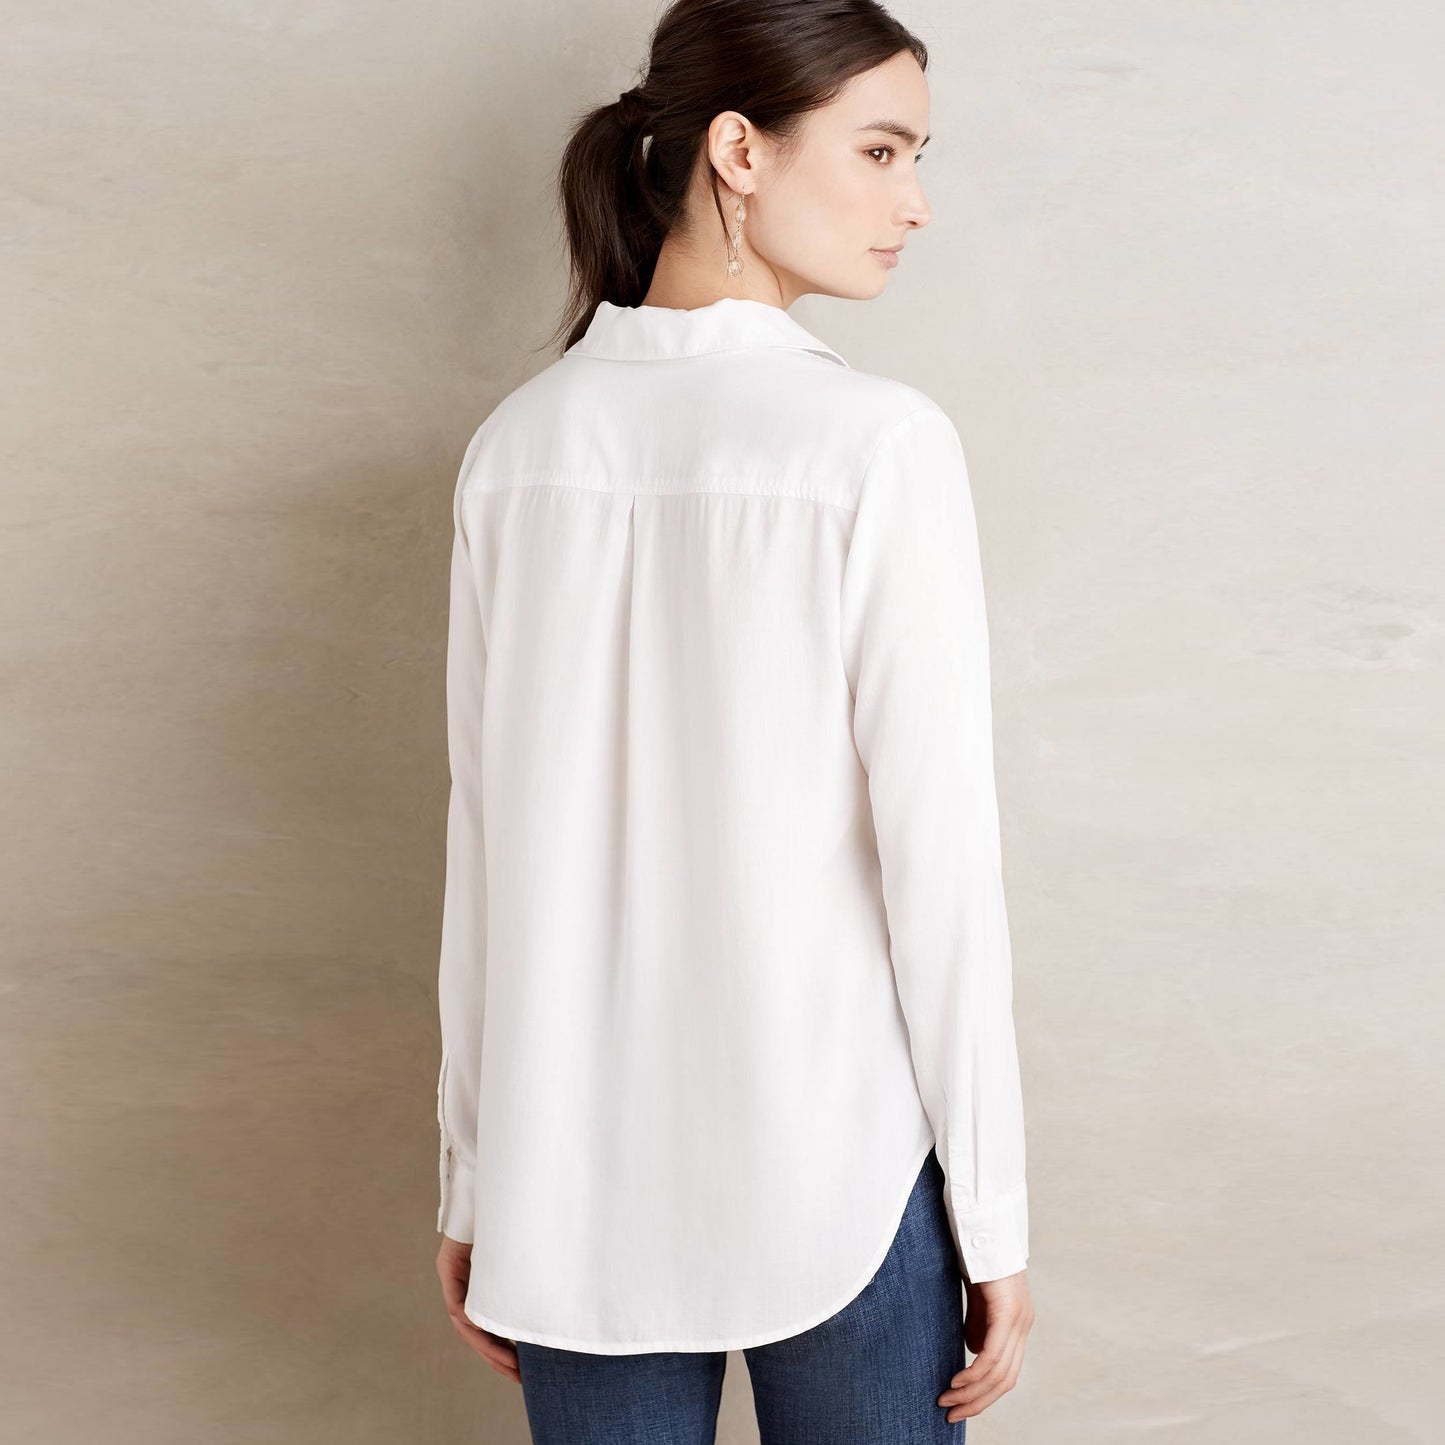 Cloth &amp; Stone Lace Up Shirt - size Medium